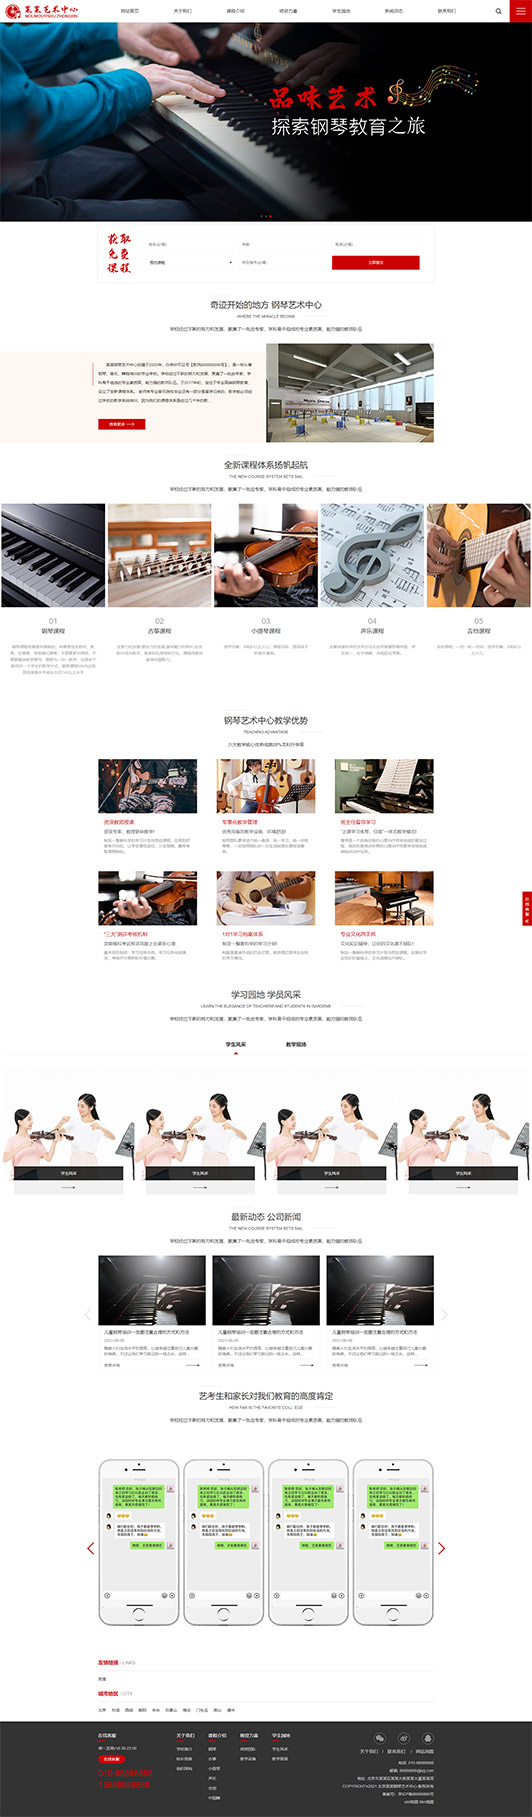 德宏钢琴艺术培训公司响应式企业网站